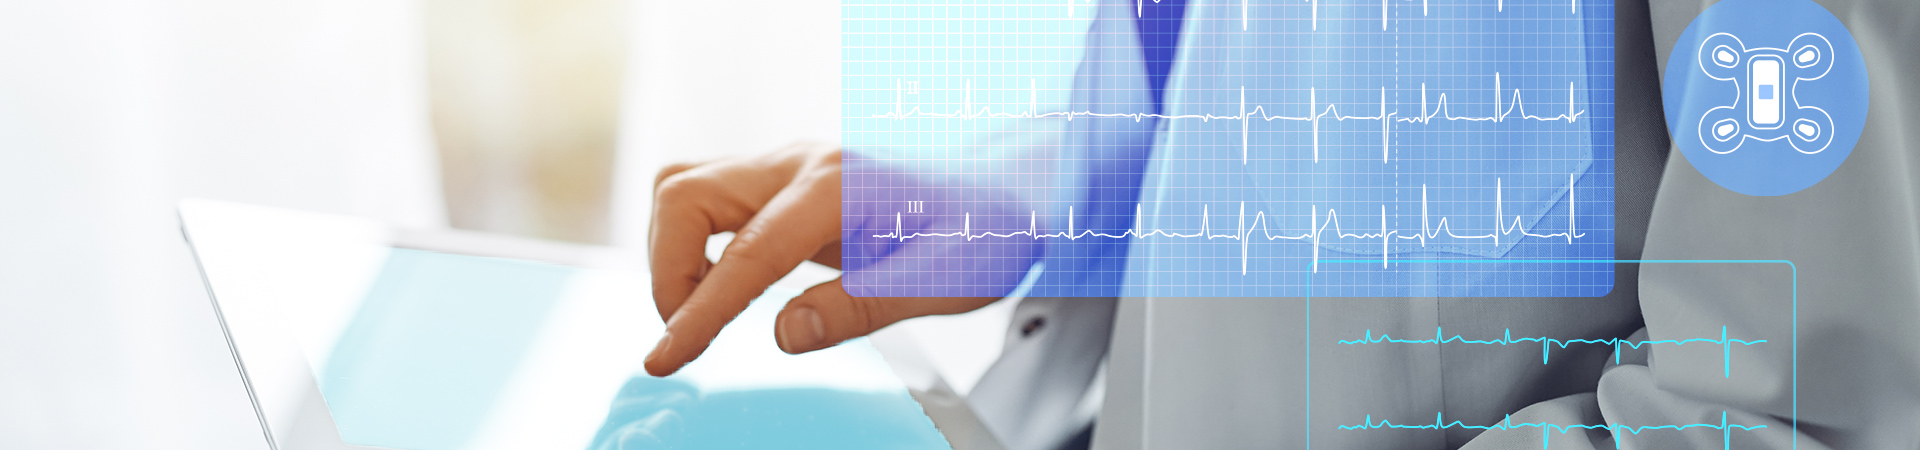 تطوير لوحة متابعة على الويب لمؤشرات مراقبة المرضى عن بُعد باستخدام مستشعرات قابلة للارتداء لتخطيط كهربية القلب